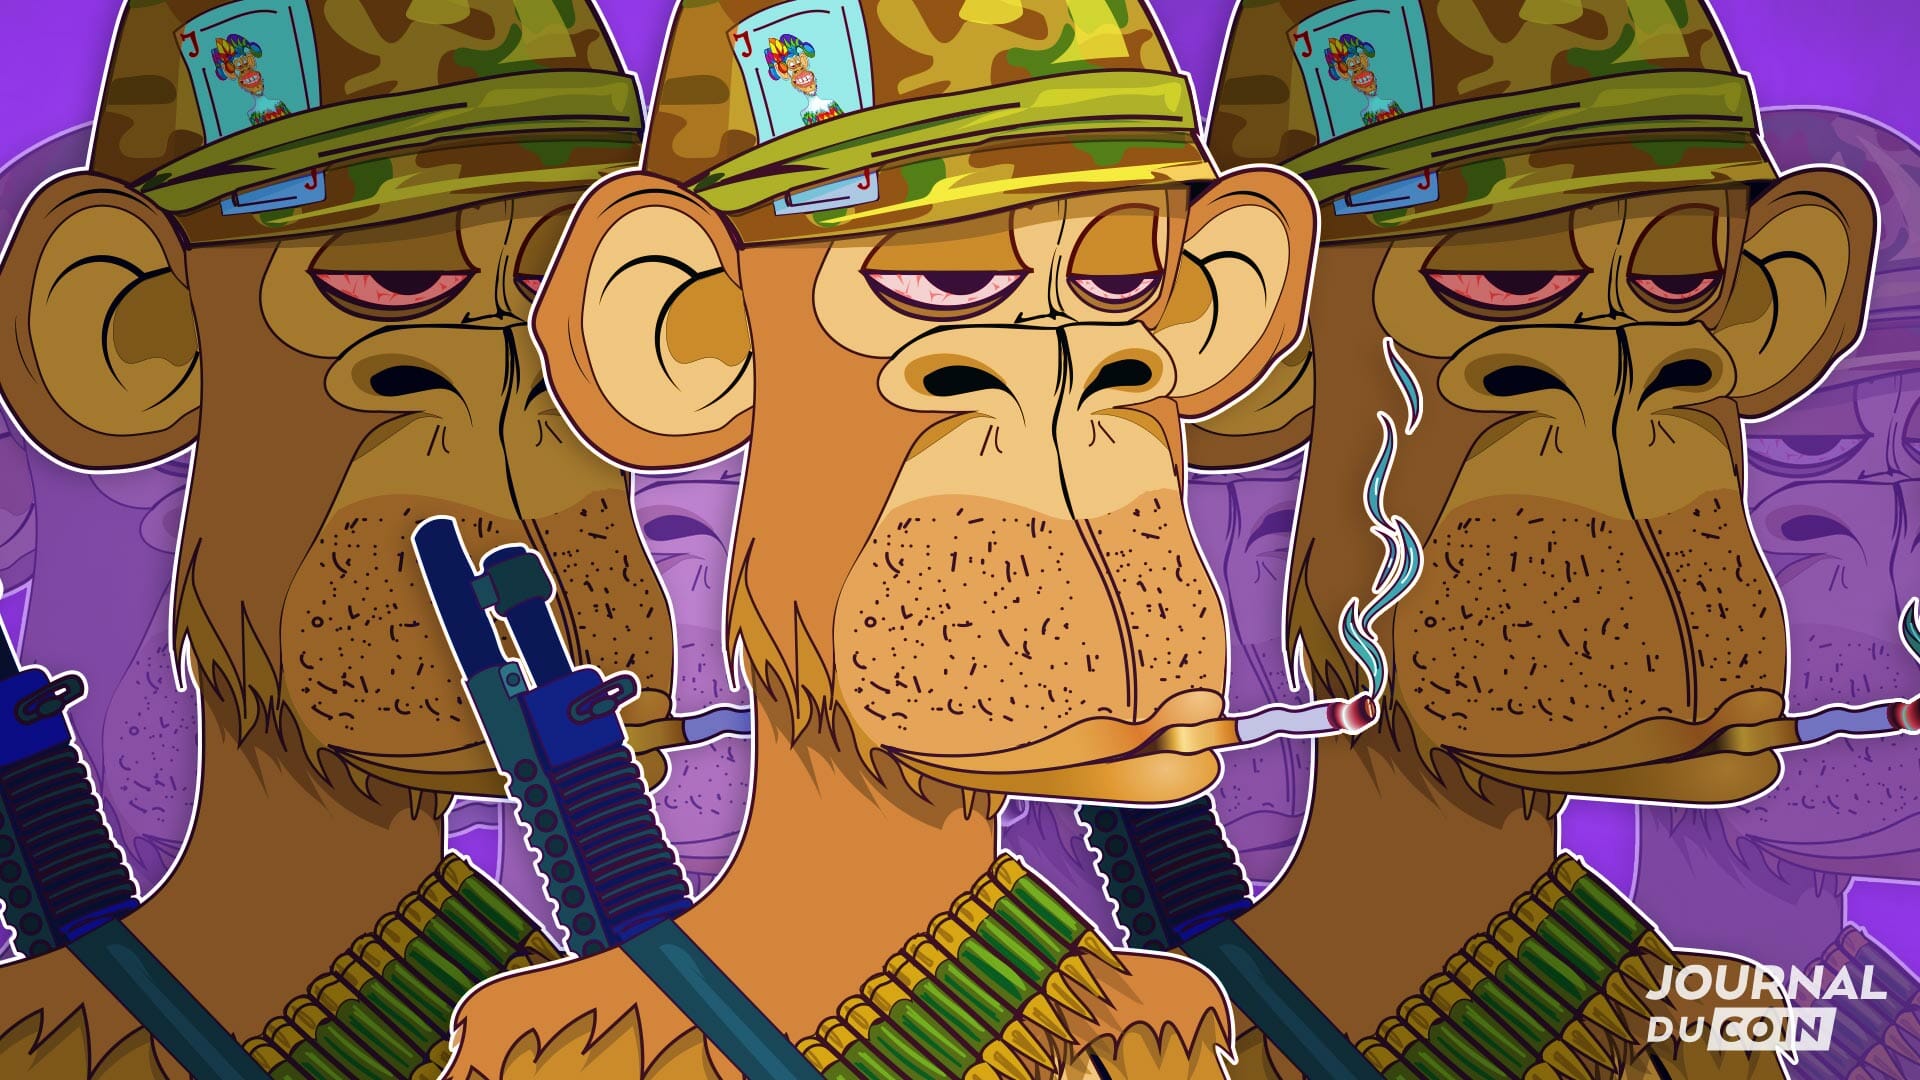 Les Bored Ape, avatars NFT participant au BattleBot Royal de cette dystopie crypto. symbol des play to earn et du metaverse